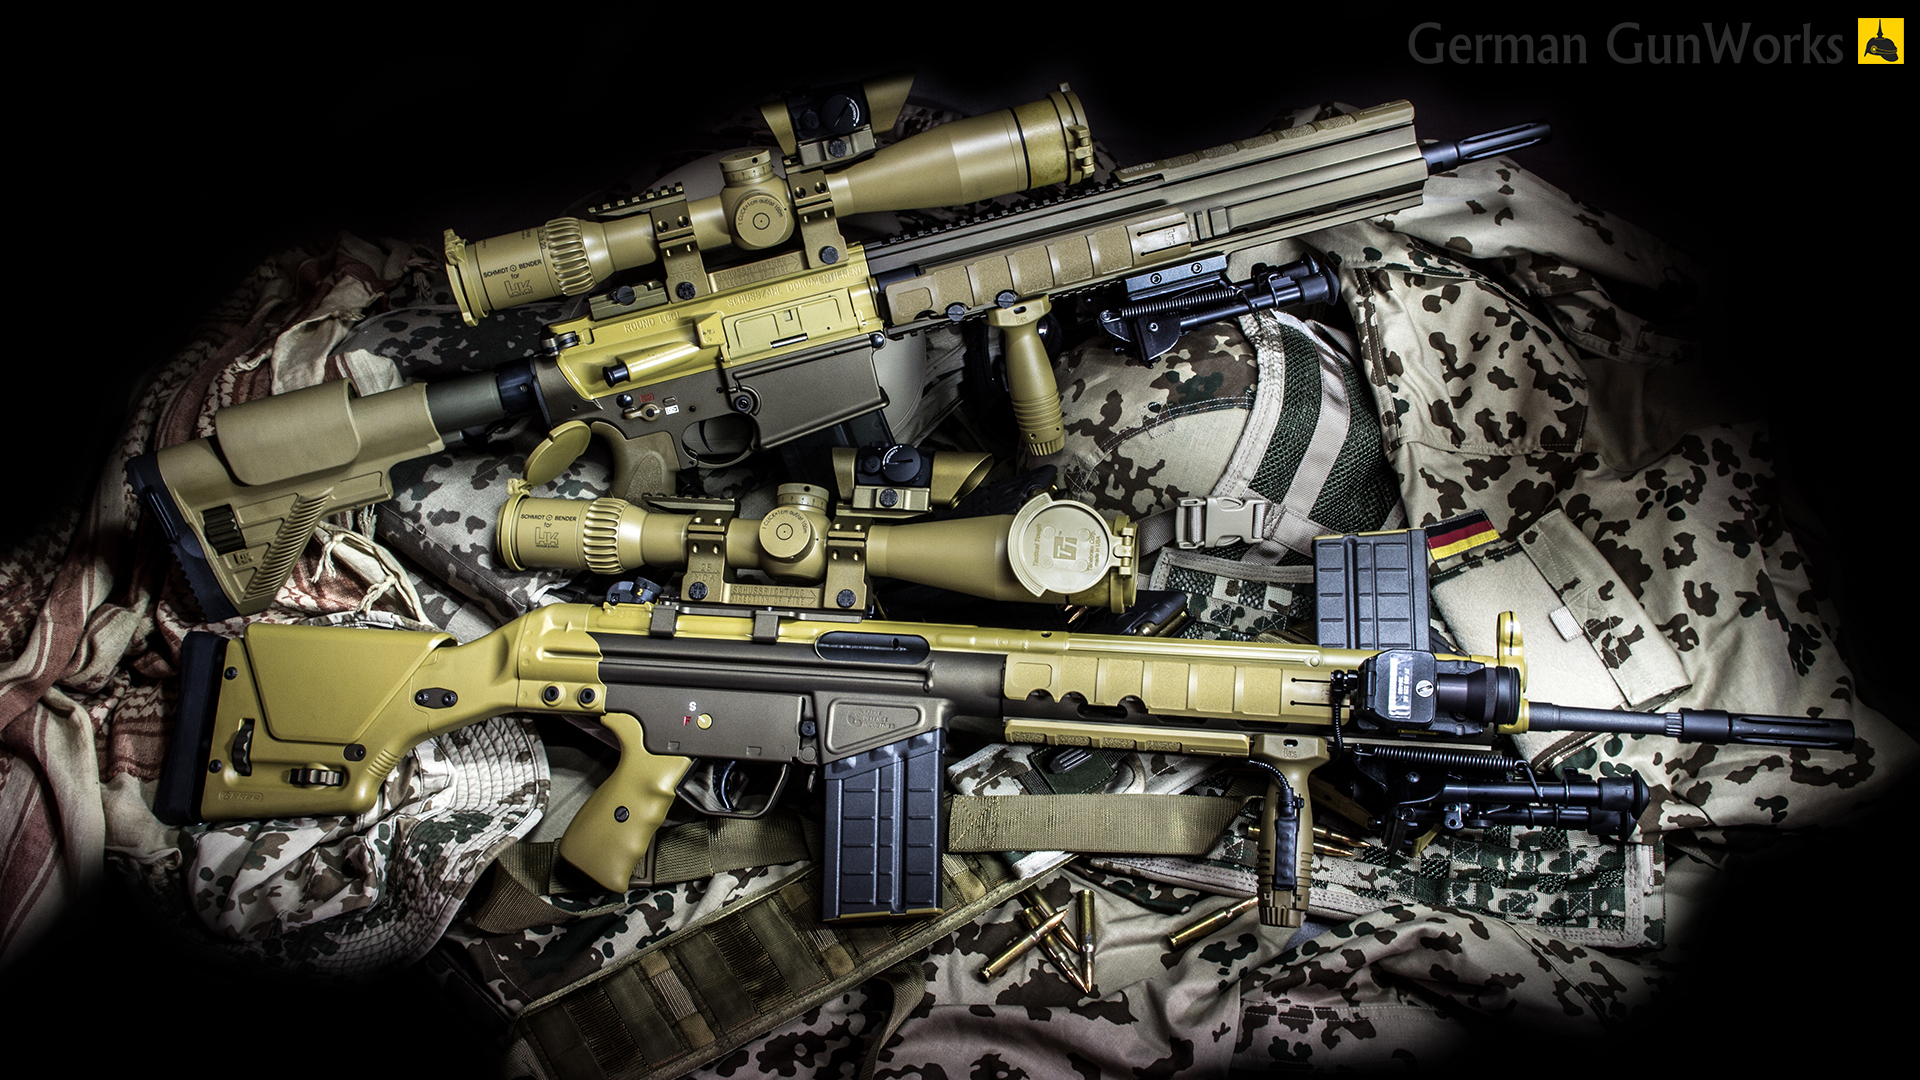 German Gunworks G3 Dmr Dachs Custom Project